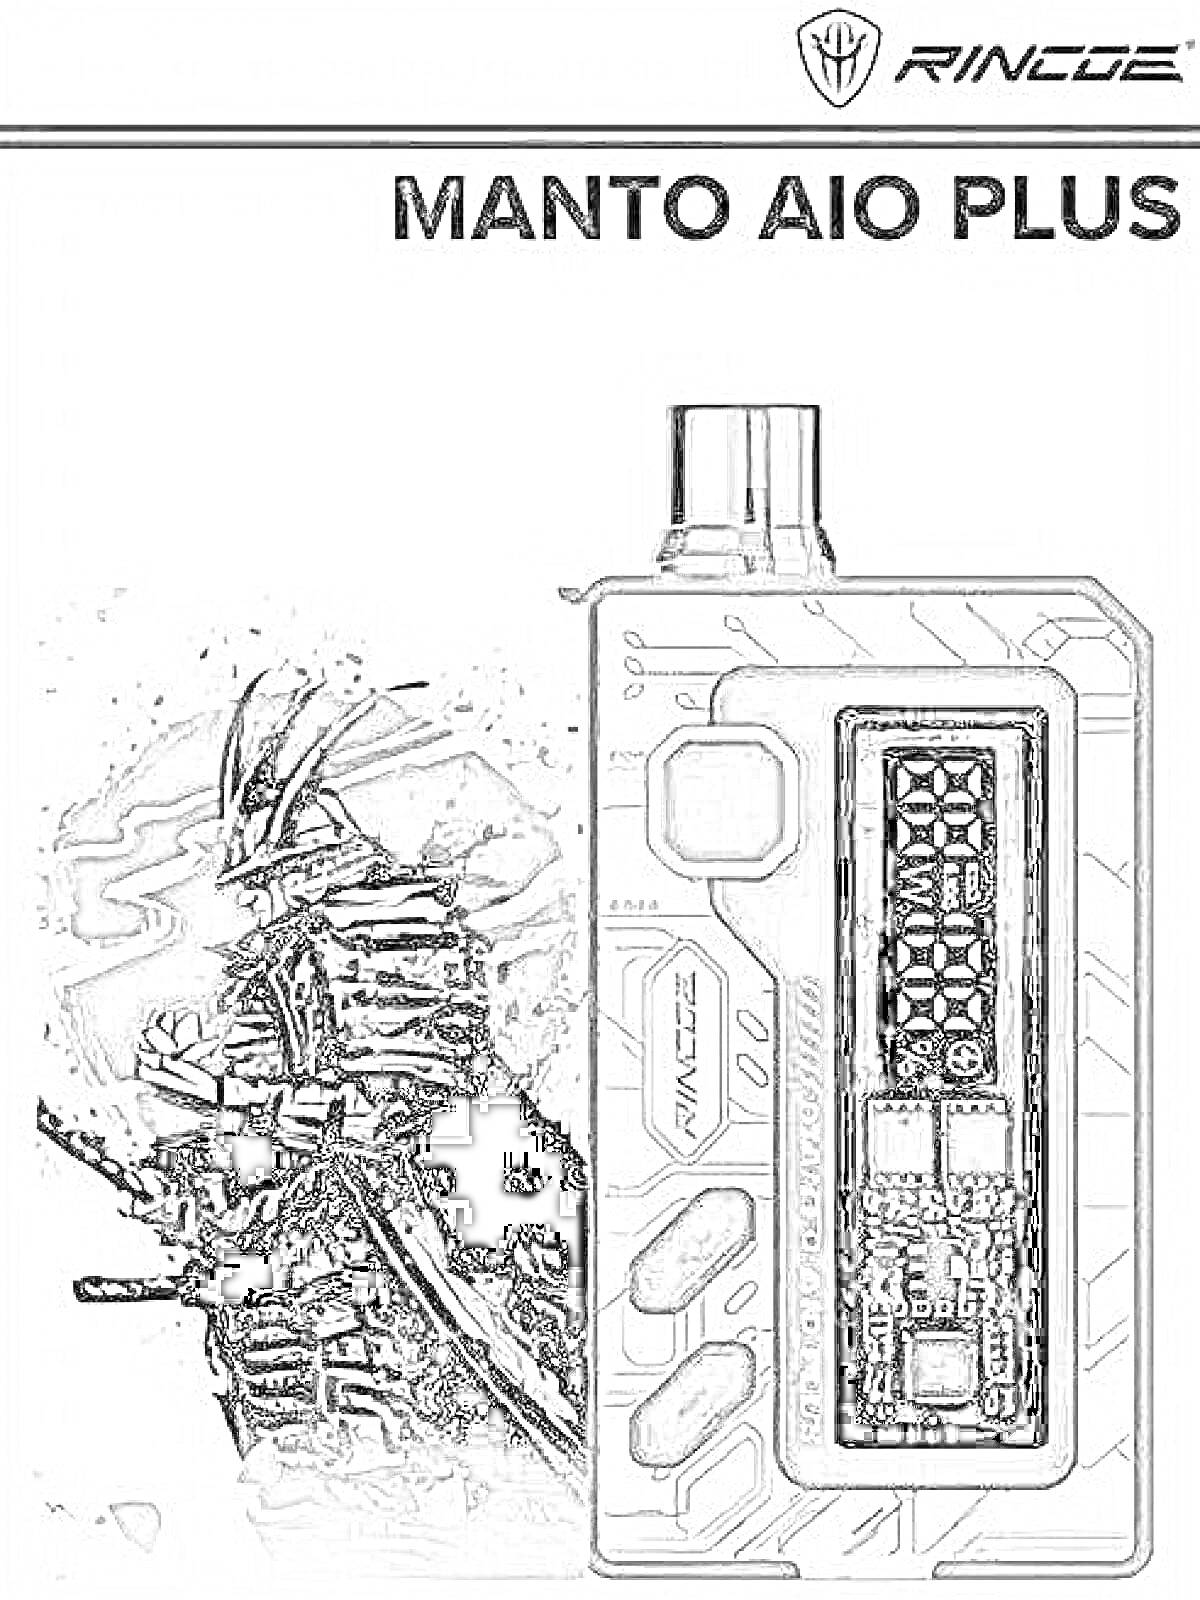 Раскраска Вейп-комплект Manto AIO Plus с черно-белым изображением воина и схемным дизайном корпуса